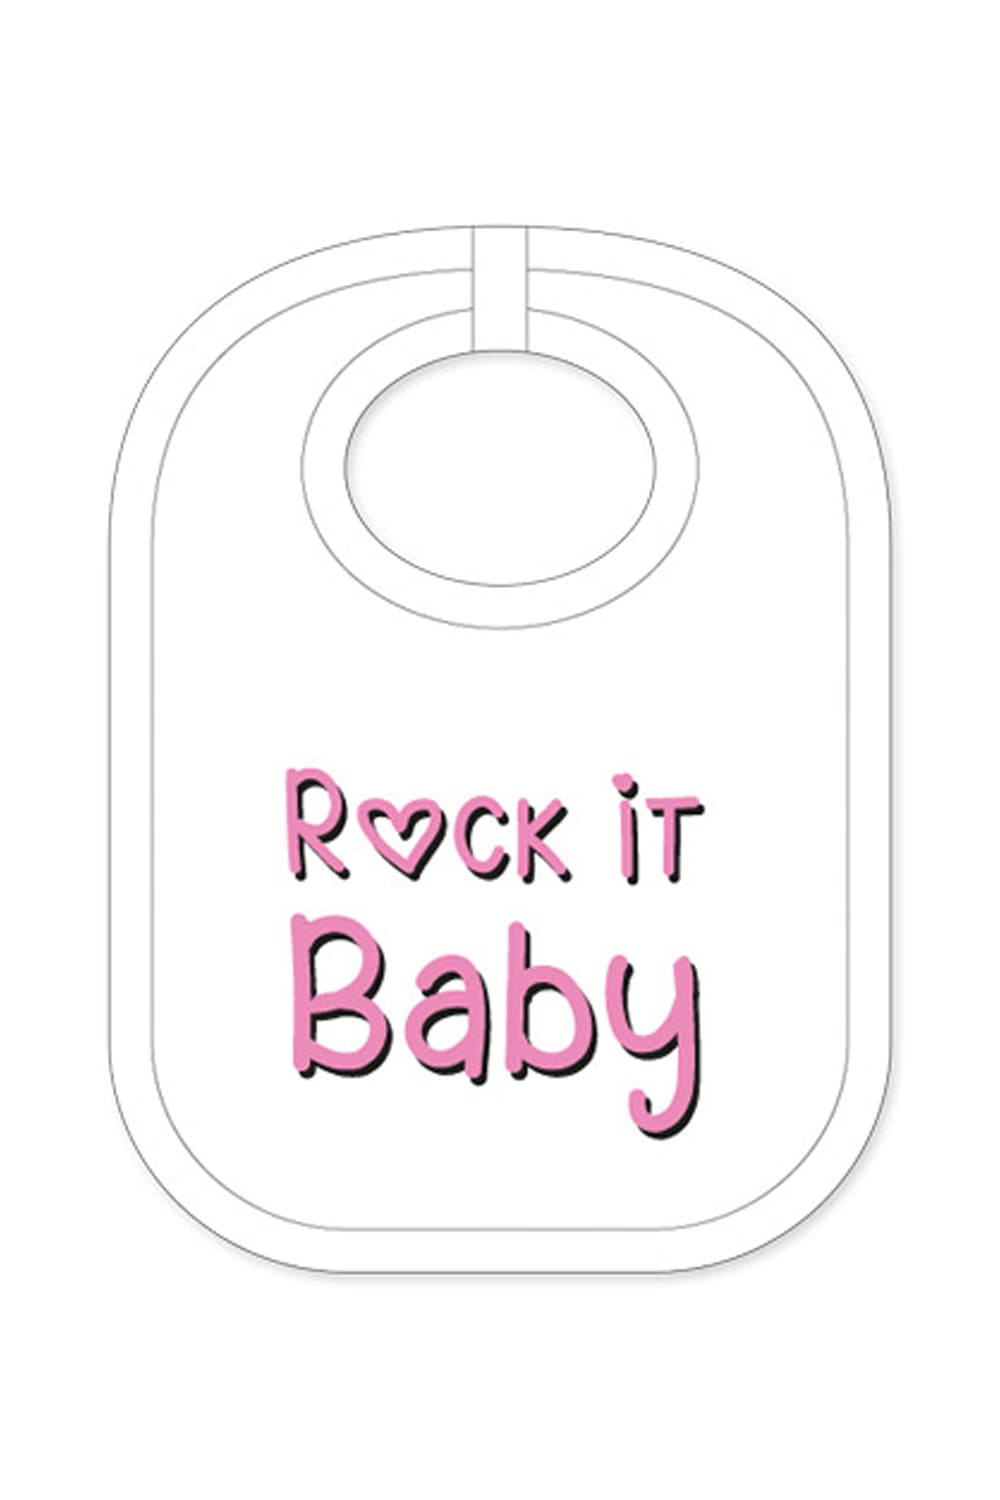 Der Babylatz mit dem Spruch: Rock it Baby, ist ein witziges Geschenk für ein Baby, für Neugeborene und für Kleinkinder. Ein ideales Geschenk oder Mitbringsel zur Geburt in der Schriftfarbe rosa.